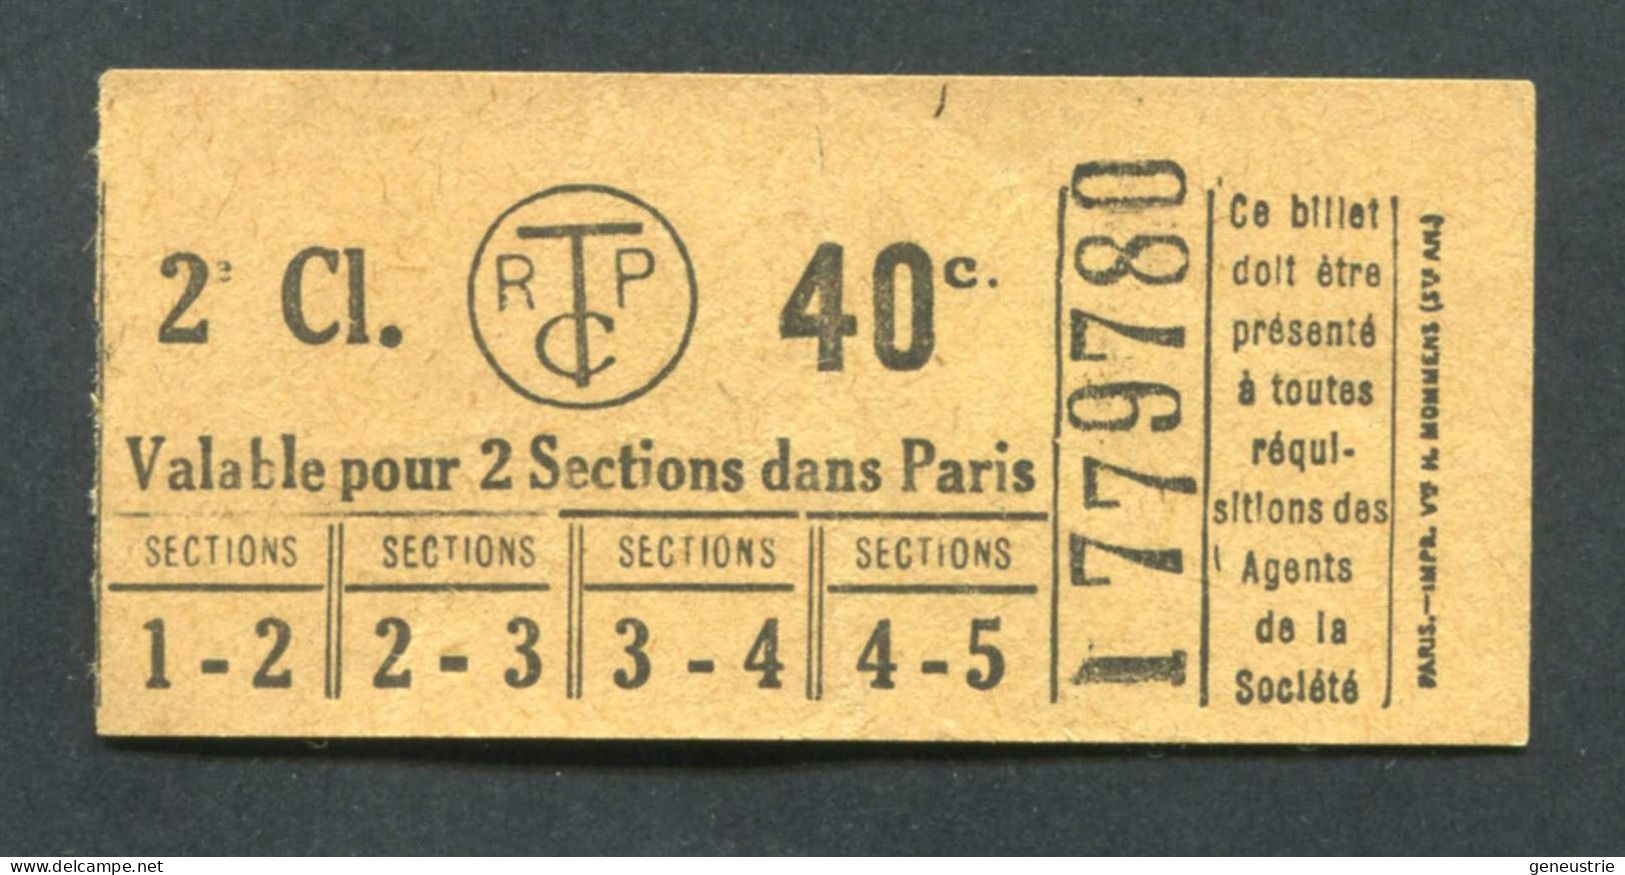 Ticket De Tramways Parisiens 1922-1924 (STCRP) 2e Classe 40c - Paris" Chemin De Fer - Tramway - Tram - Europe